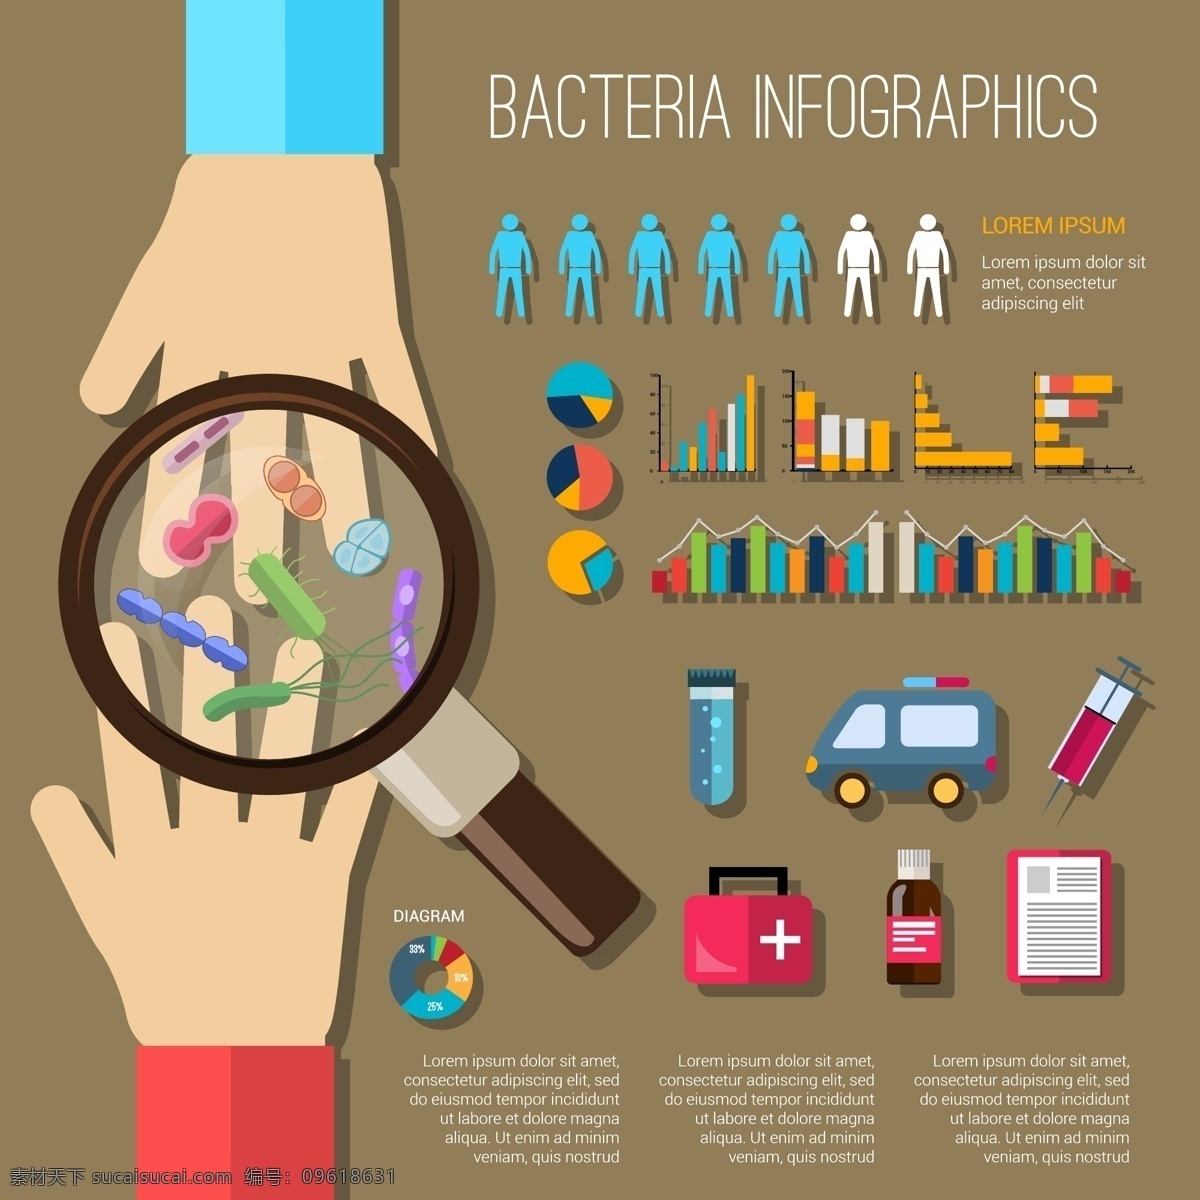 卡通 细菌 预防 治疗 信息 图 矢量 放大镜 手臂 试剂 药物 数据分析 信息图 注射器 卫生 图表 矢量图 棕色